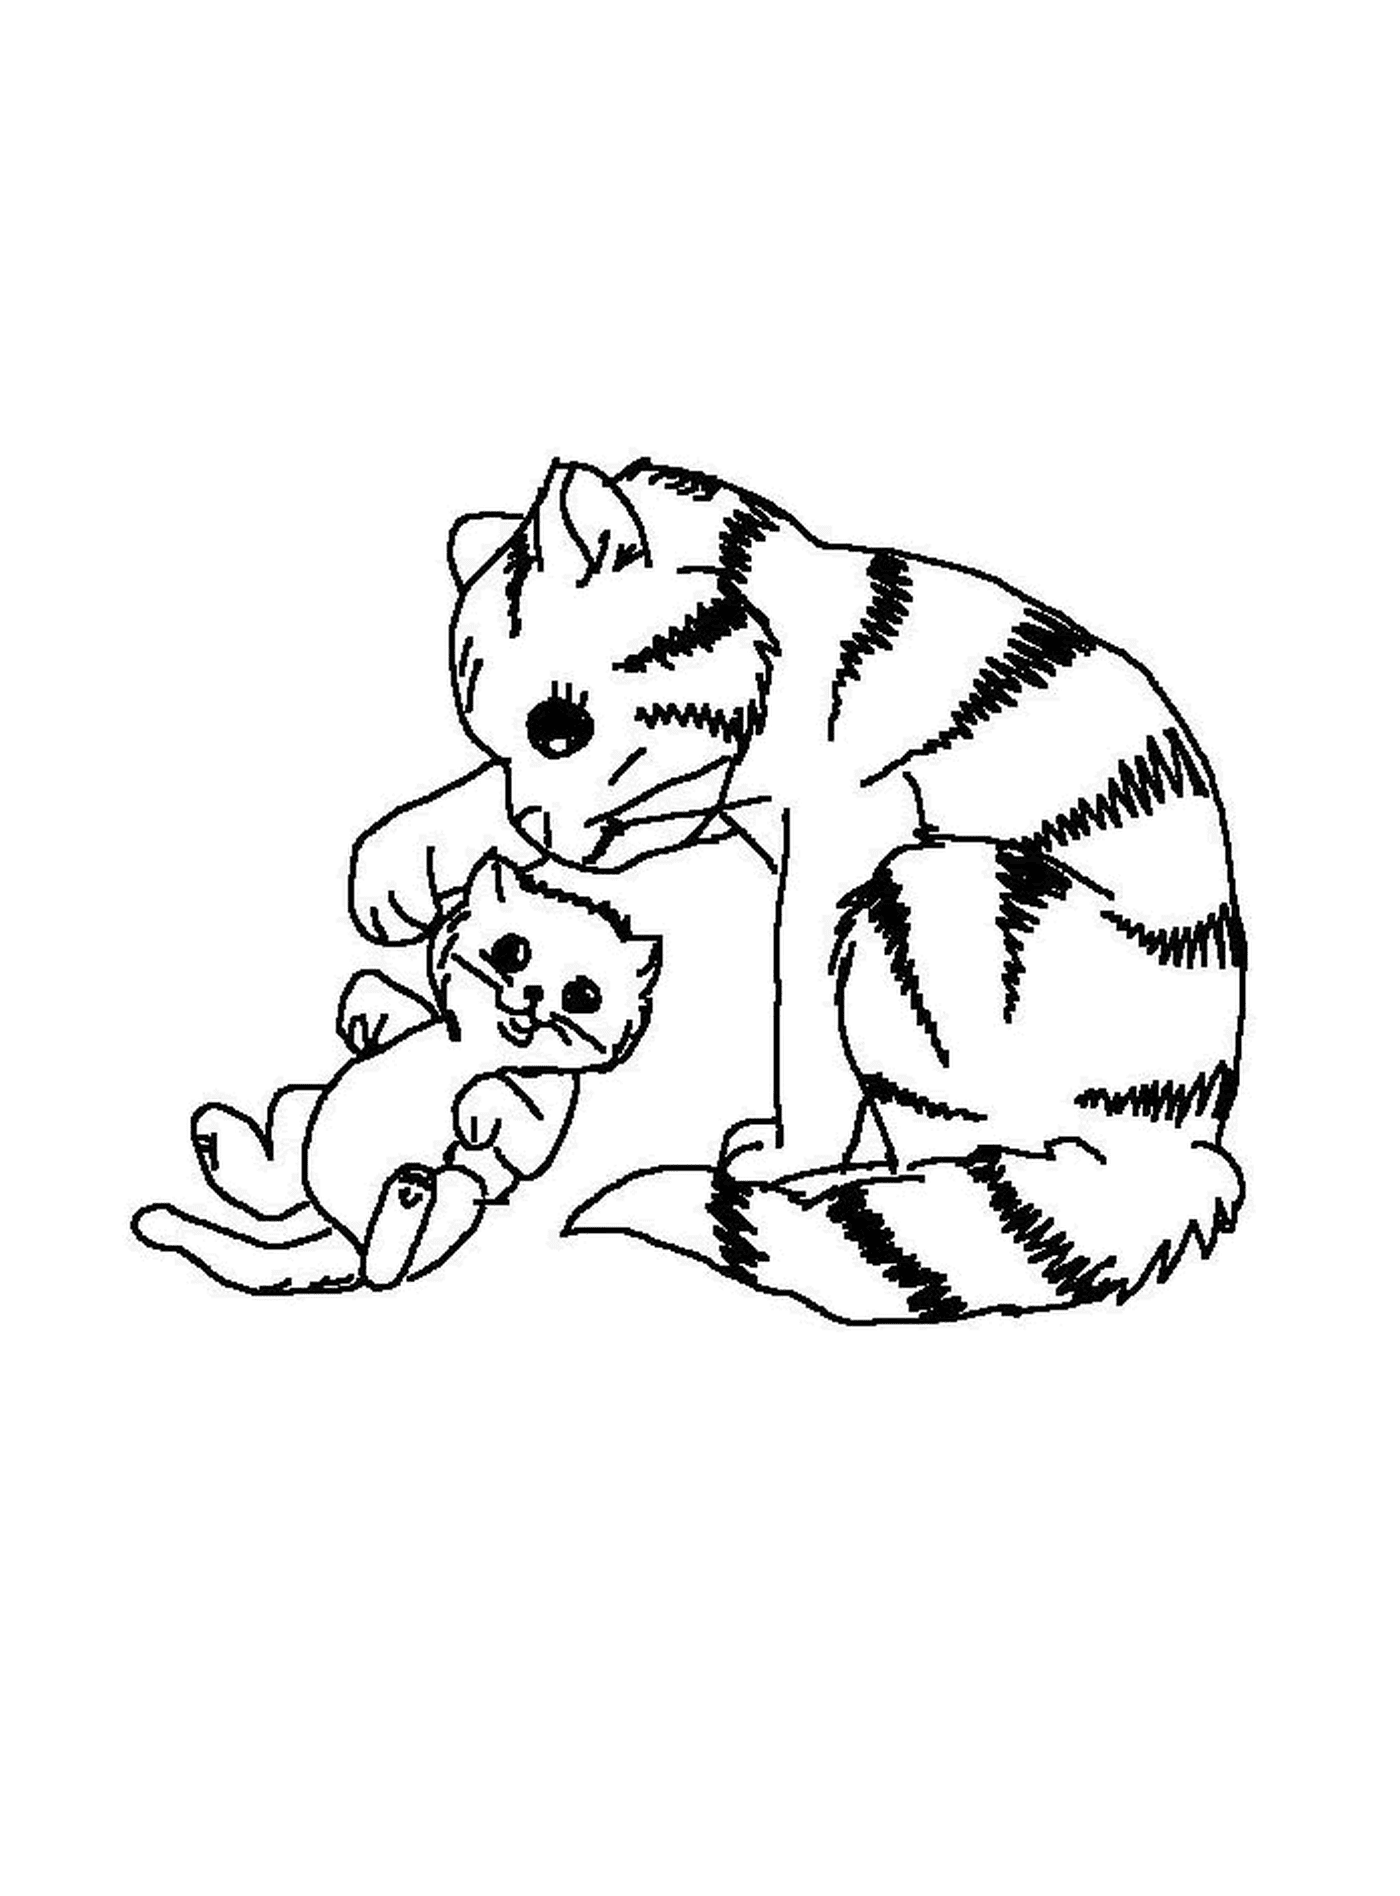  Un gato juega con un gatito 